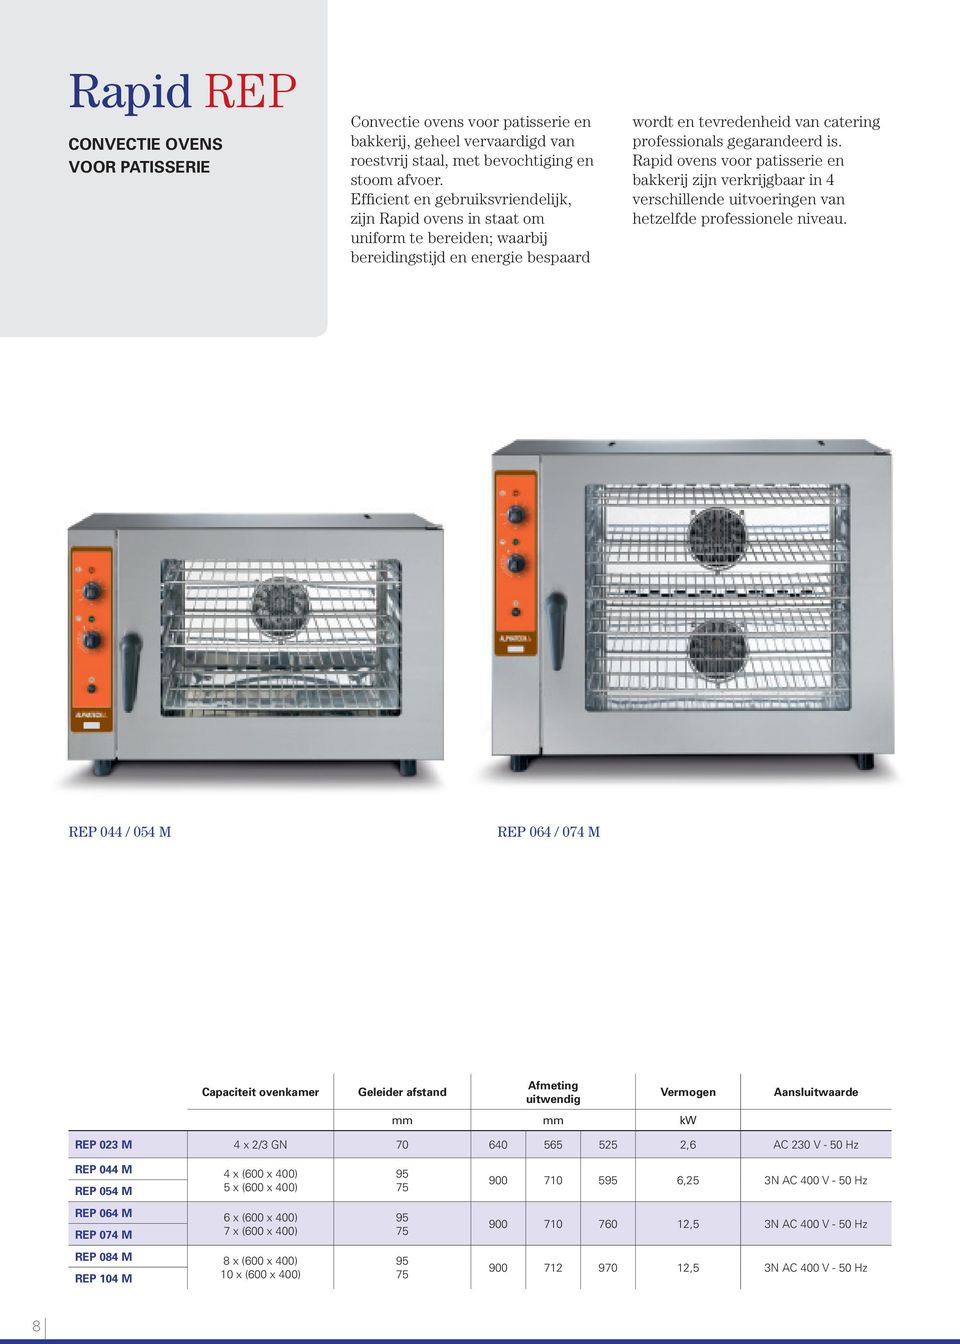 Rapid ovens voor patisserie en bakkerij zijn verkrijgbaar in 4 verschillende uitvoeringen van hetzelfde professionele niveau.